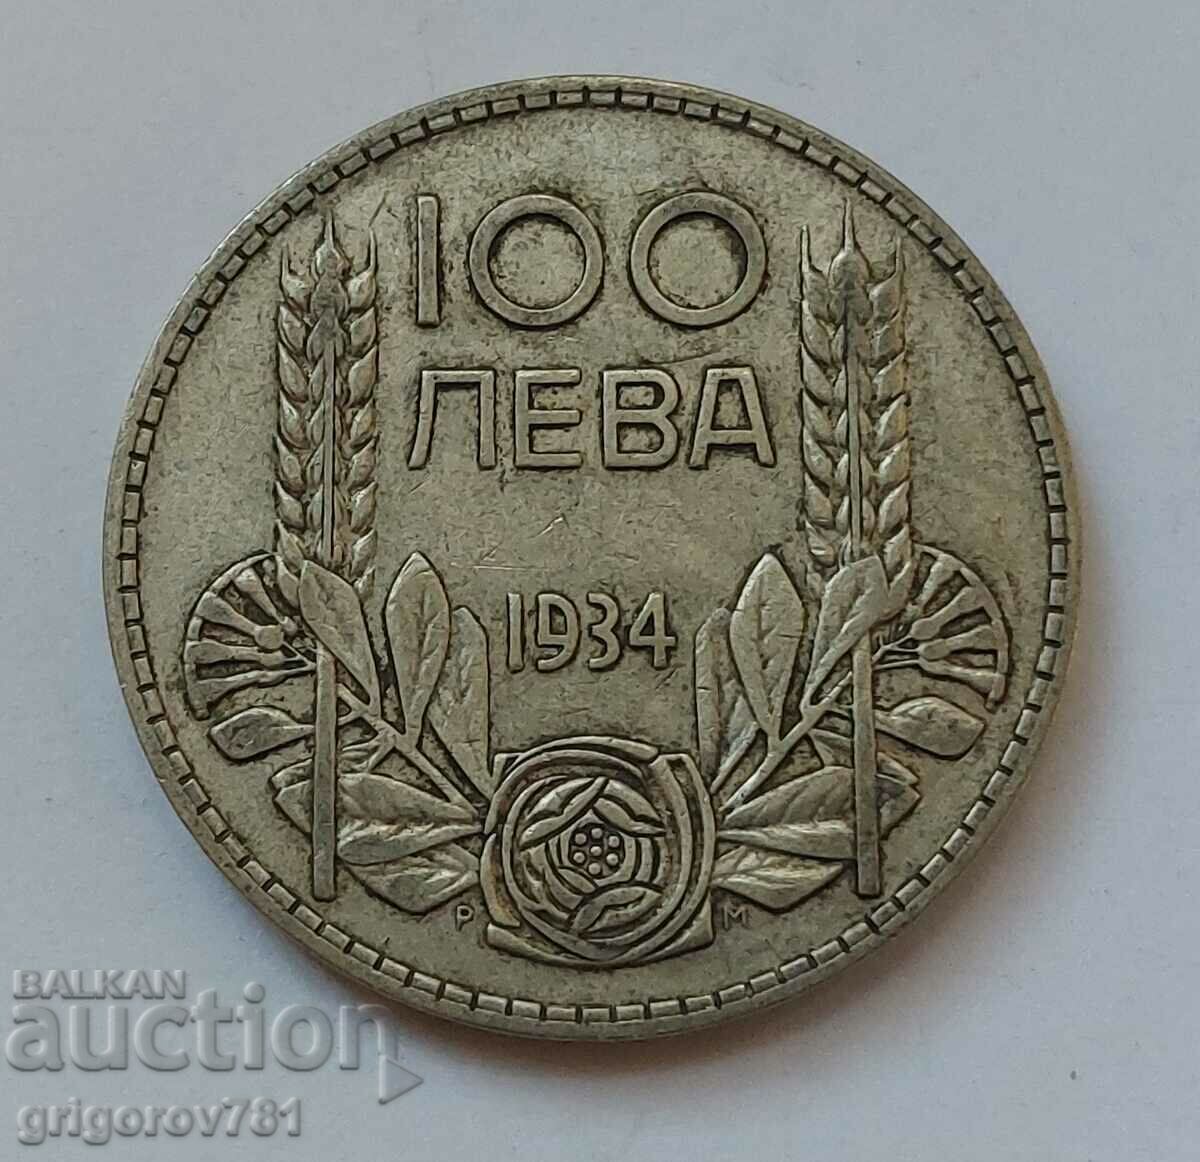 100 leva silver Bulgaria 1934 - silver coin #89